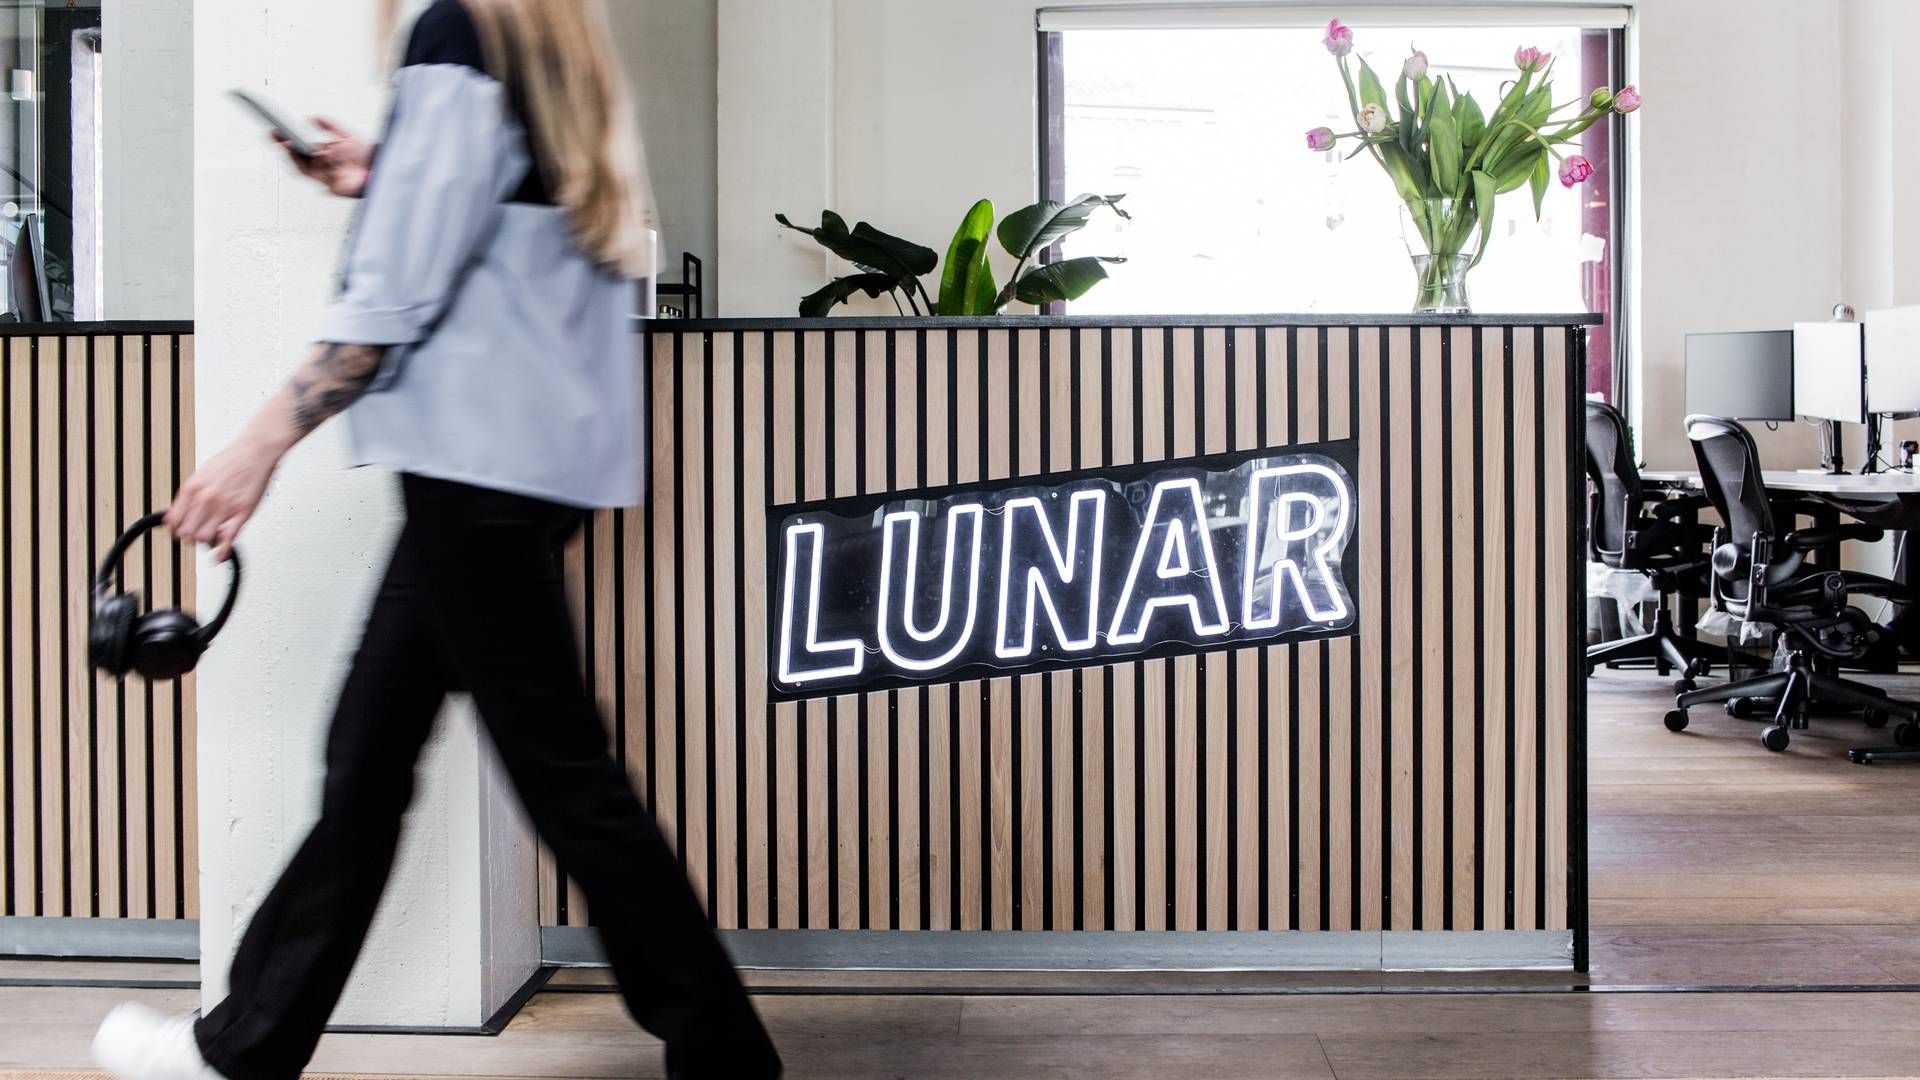 Lunar kunngjorde fredag at selskapet vil hente inn et tresifret millionbeløp i ny kapital. | Foto: Pr/lunar Bank